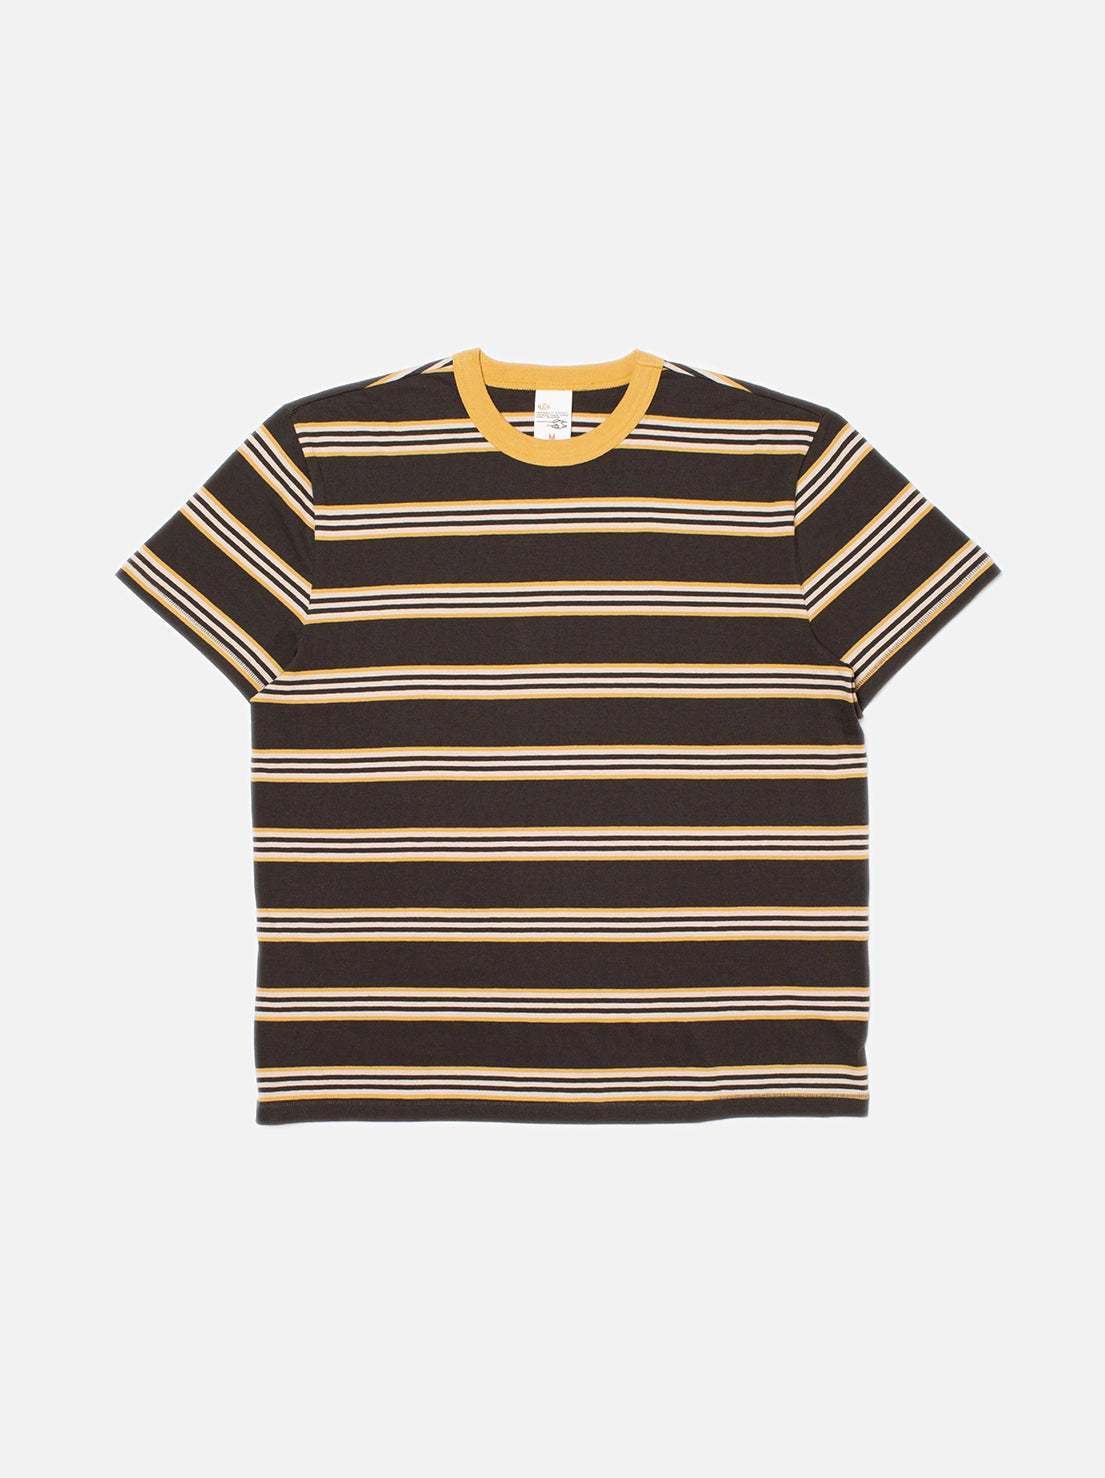 Nudie - Leif Mud Stripe T-Shirt - Multi